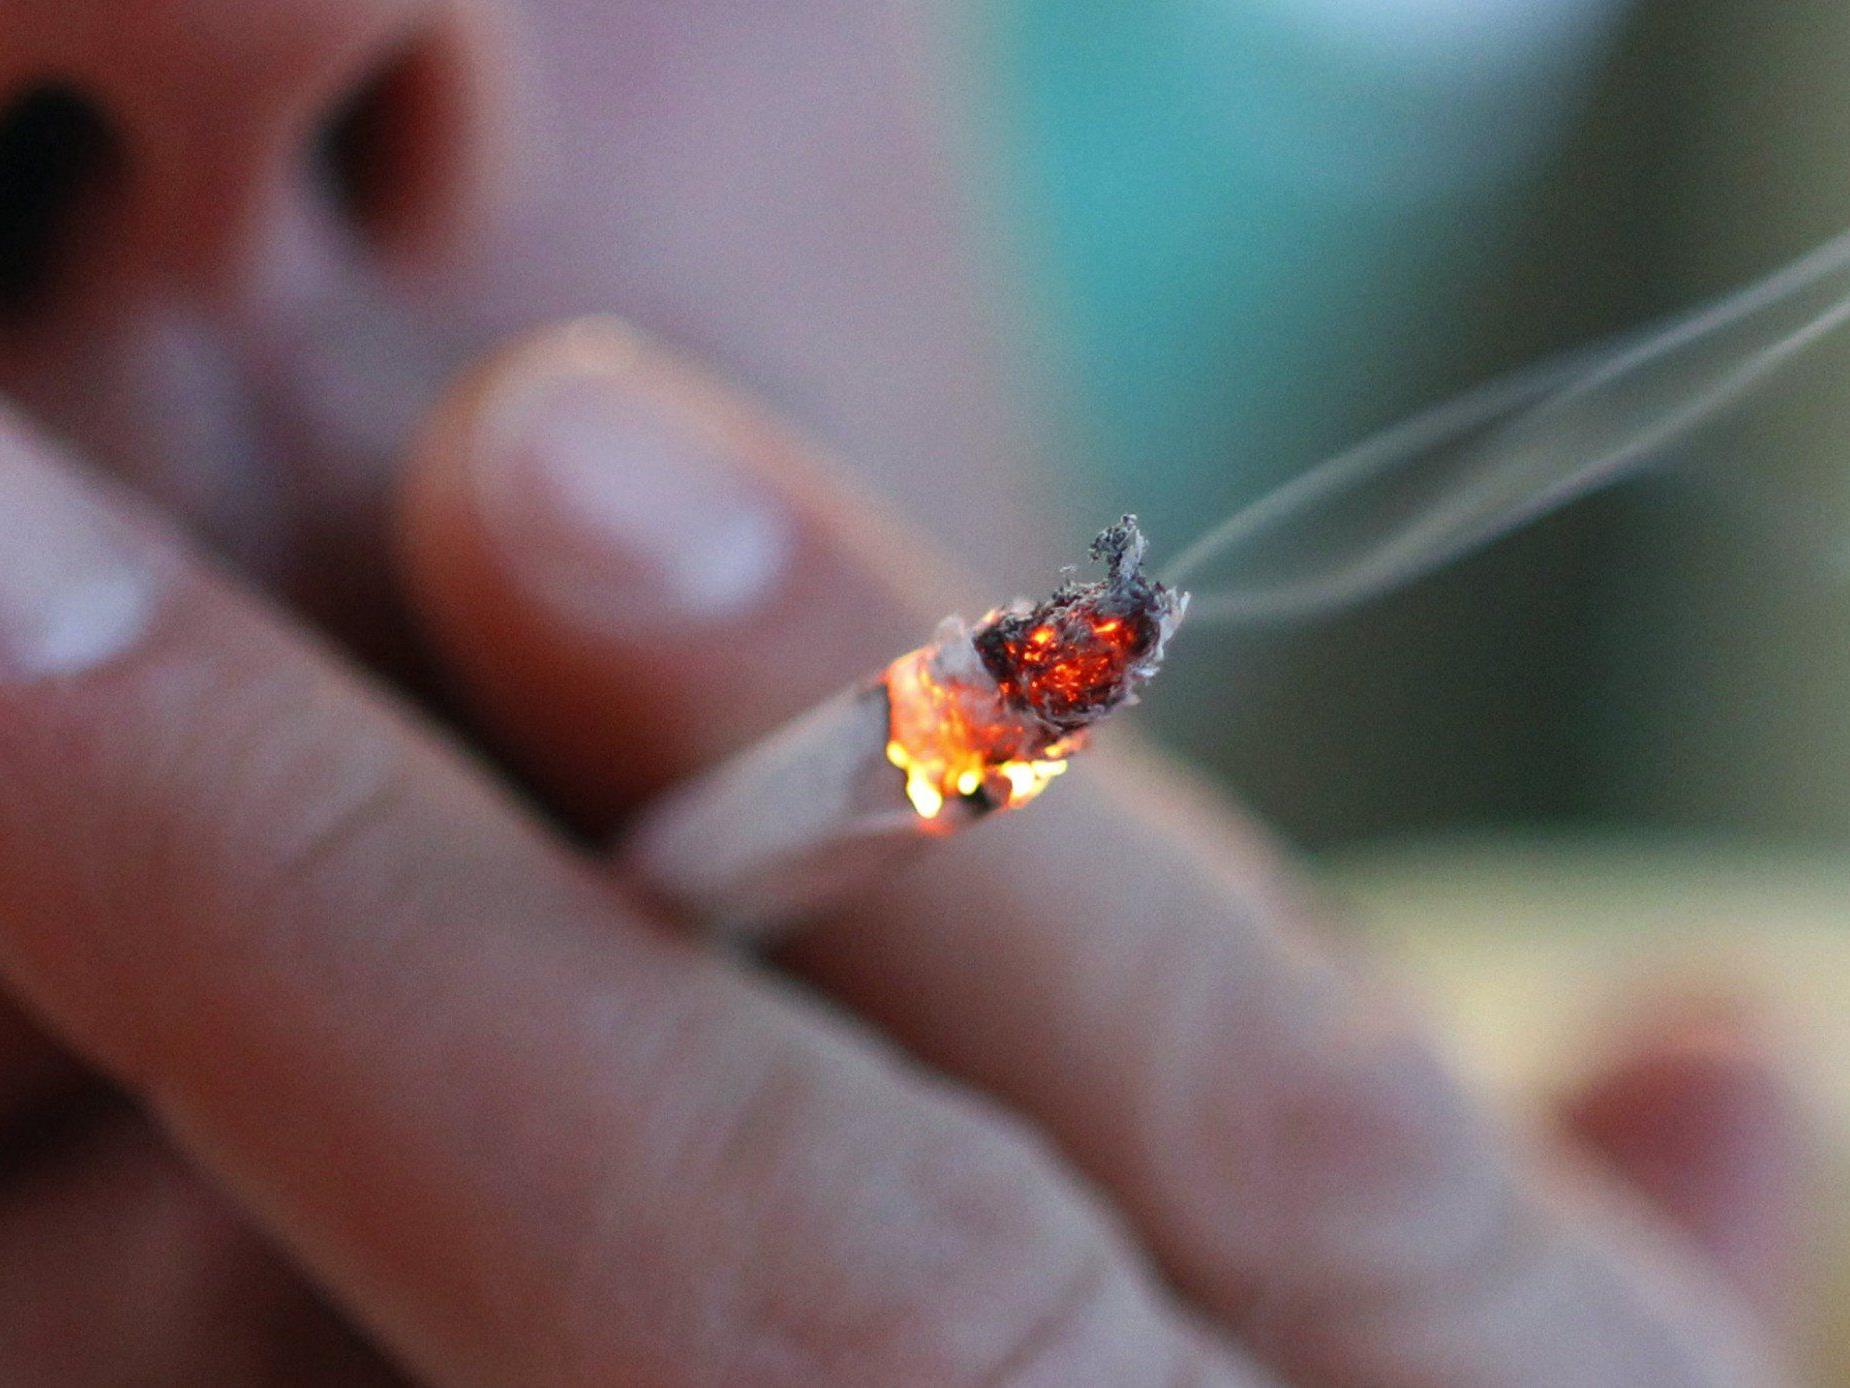 Weggeworfene Zigarette setzt Ladung von PicUp in Brand.